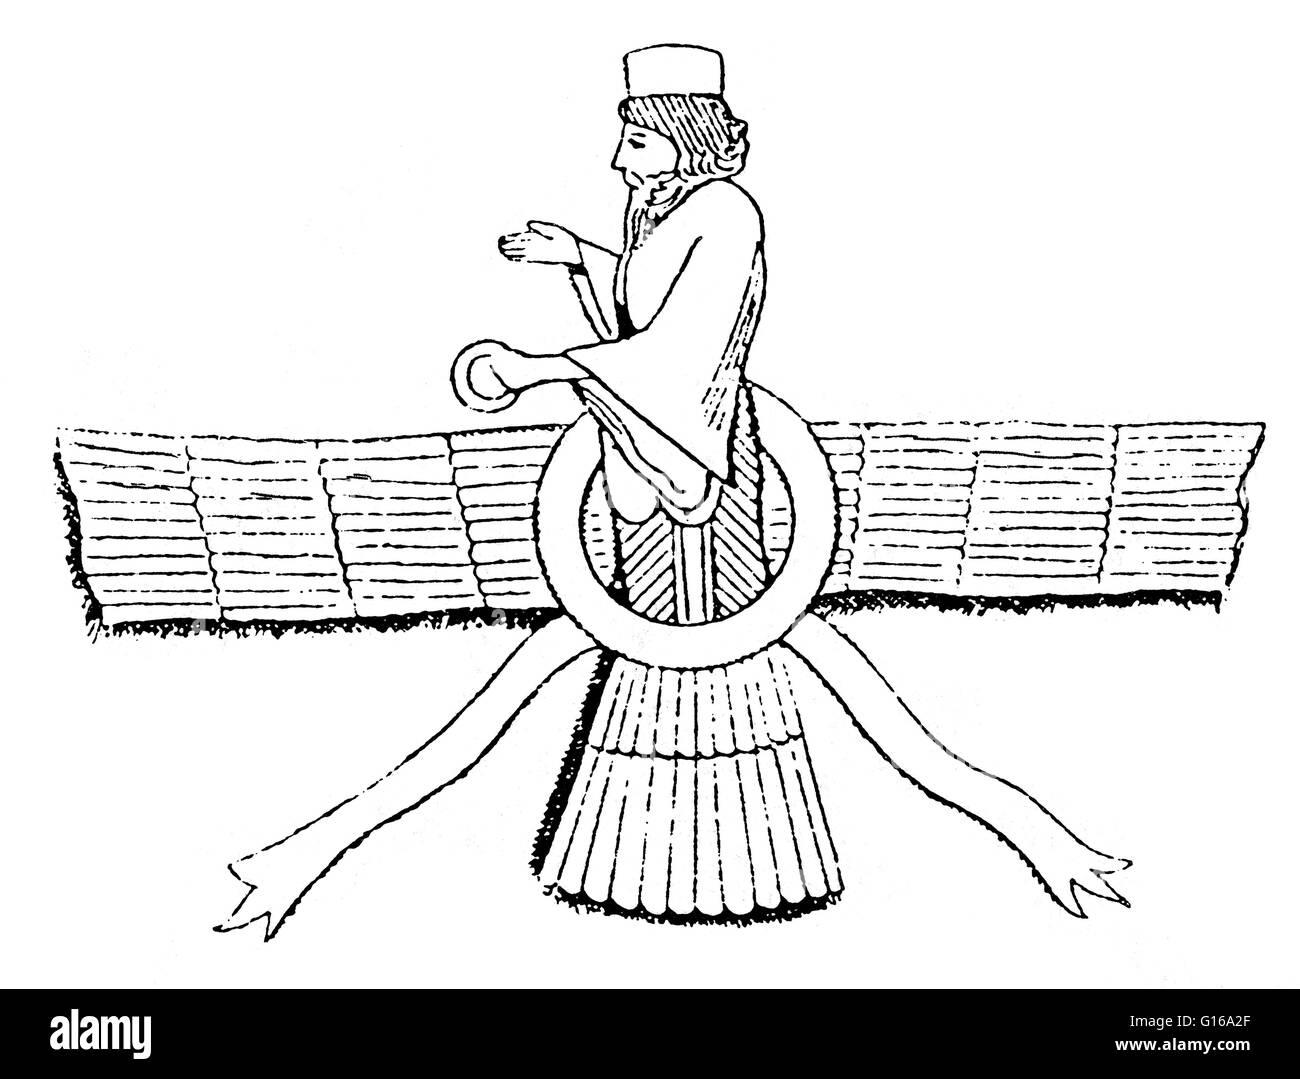 Ahura Mazda est l'Avestan nom d'une divinité de l'ancienne religion iranienne qui fut proclamé le Dieu incréé par Zoroastre, le fondateur du Zoroastrisme. Ahura Mazda est décrite comme la plus haute divinité du culte dans le zoroastrisme, en plus d'être la f Banque D'Images